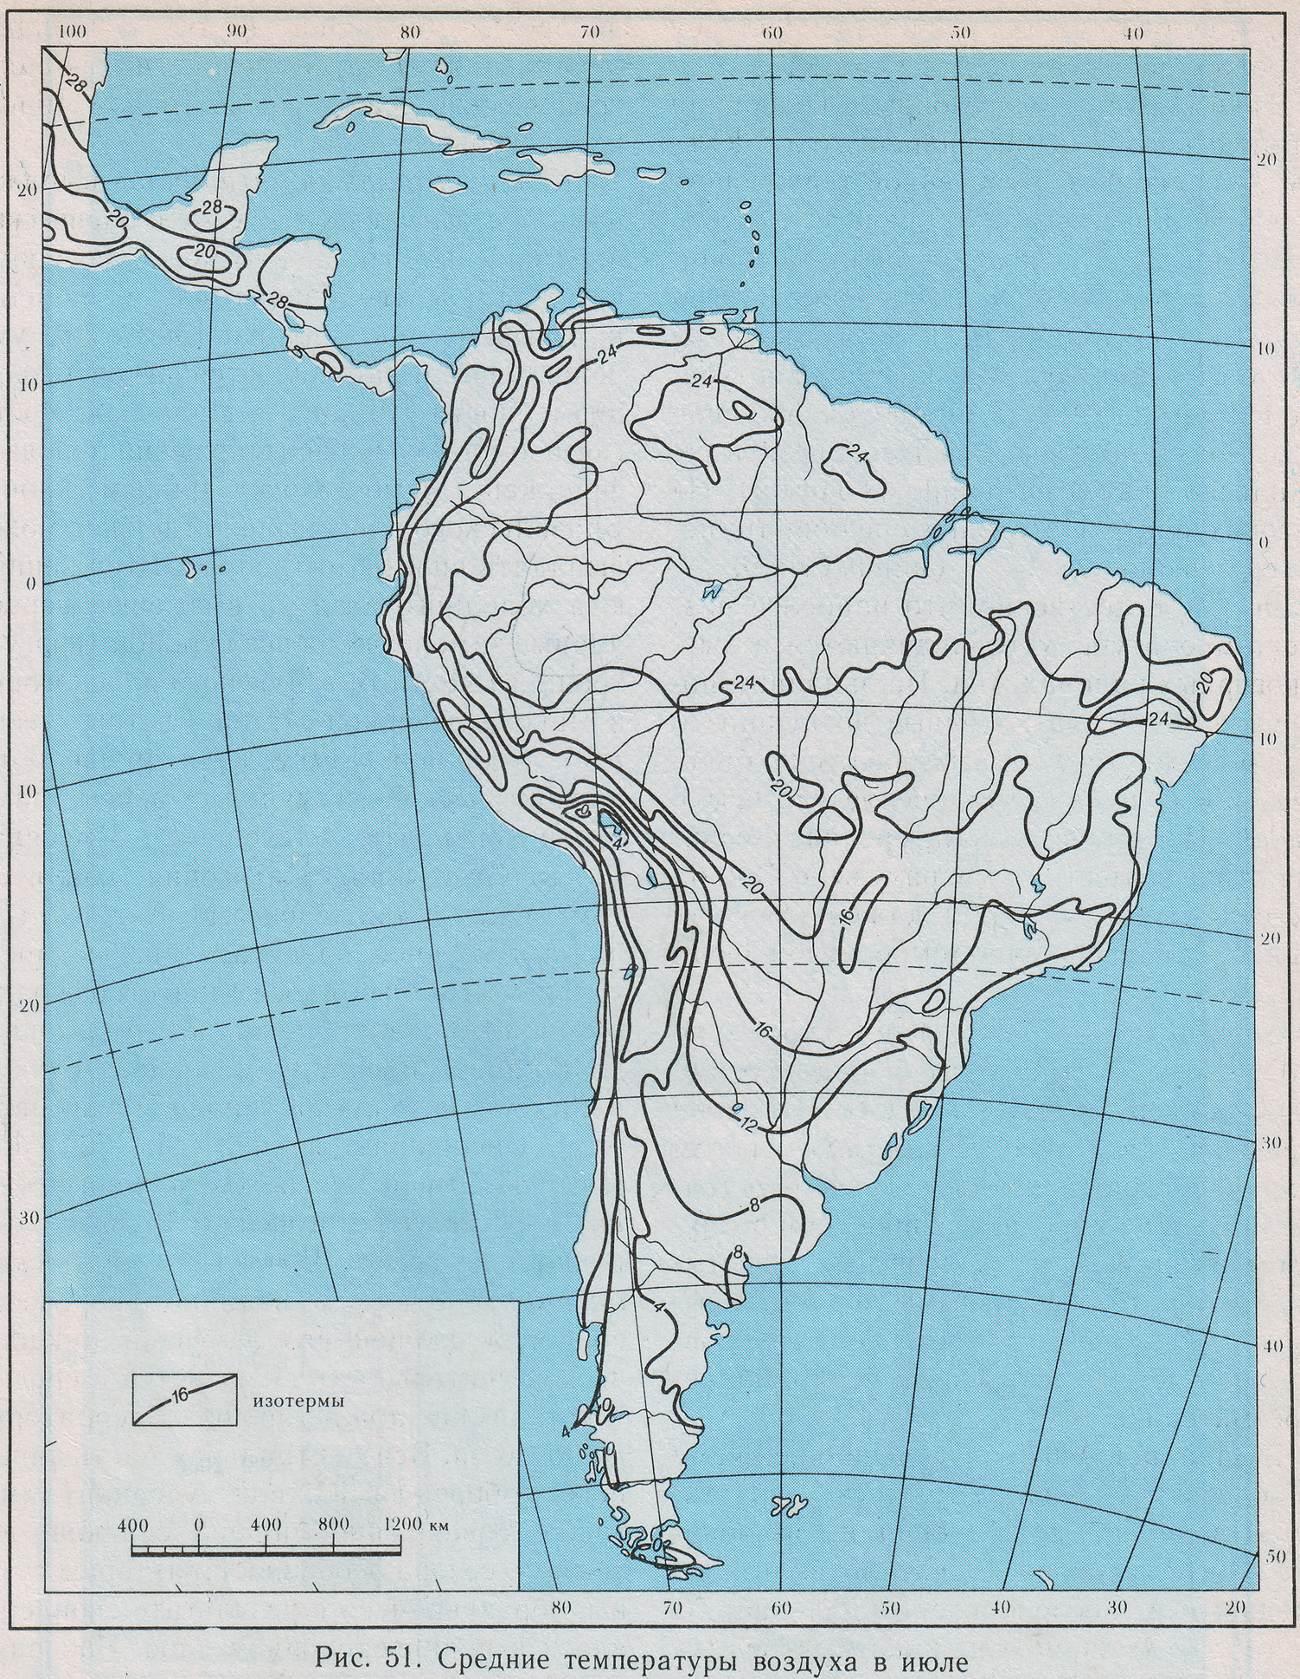 Озера южной америки 7 класс контурная карта. Политическая контурная карта Южной Америки 7 класс. Контурная крата Южной Америки. Политическая контурная карта Южной Америки 7 класс география. Физическая карта Южной Америки 7 класс контурная карта.